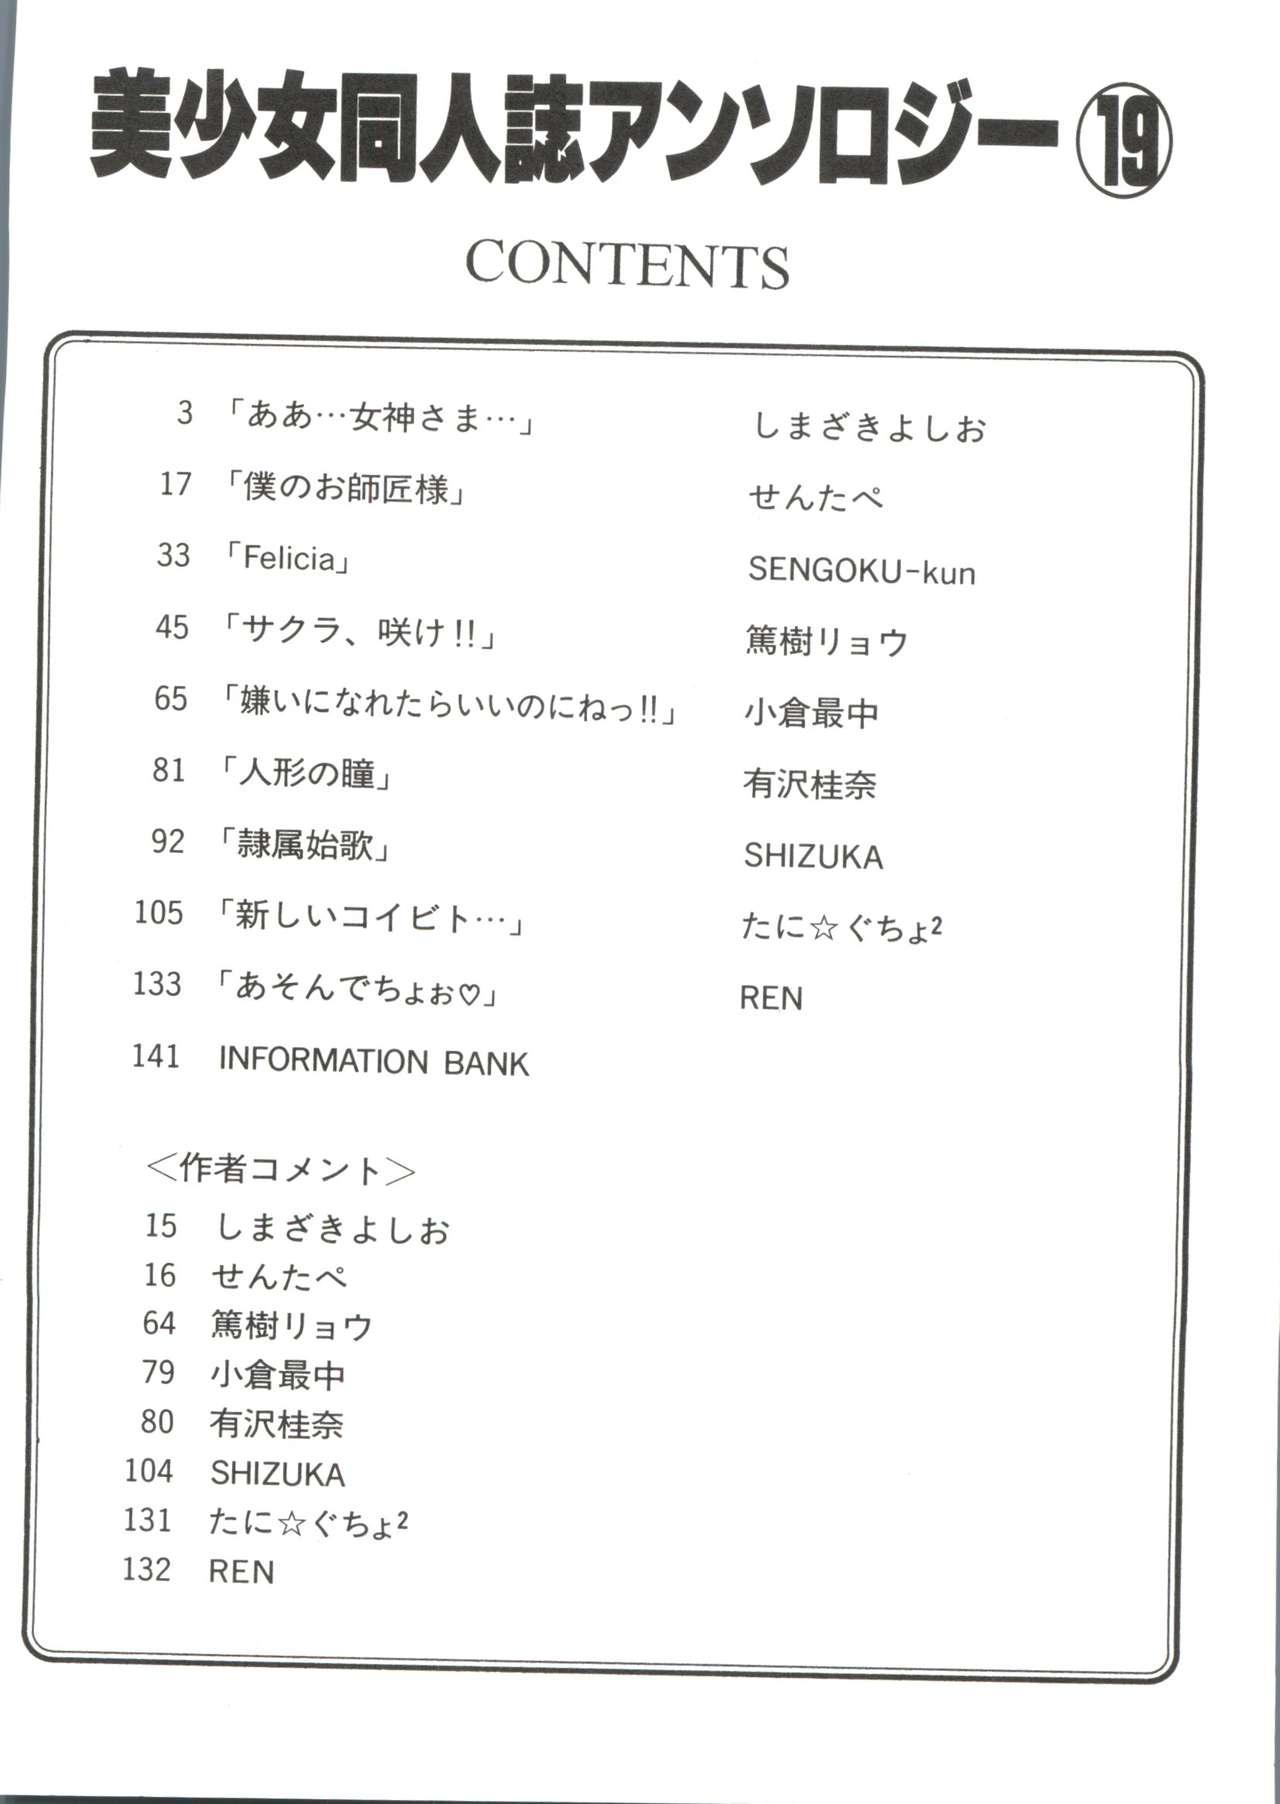 Bishoujo Doujinshi Anthology 19 5